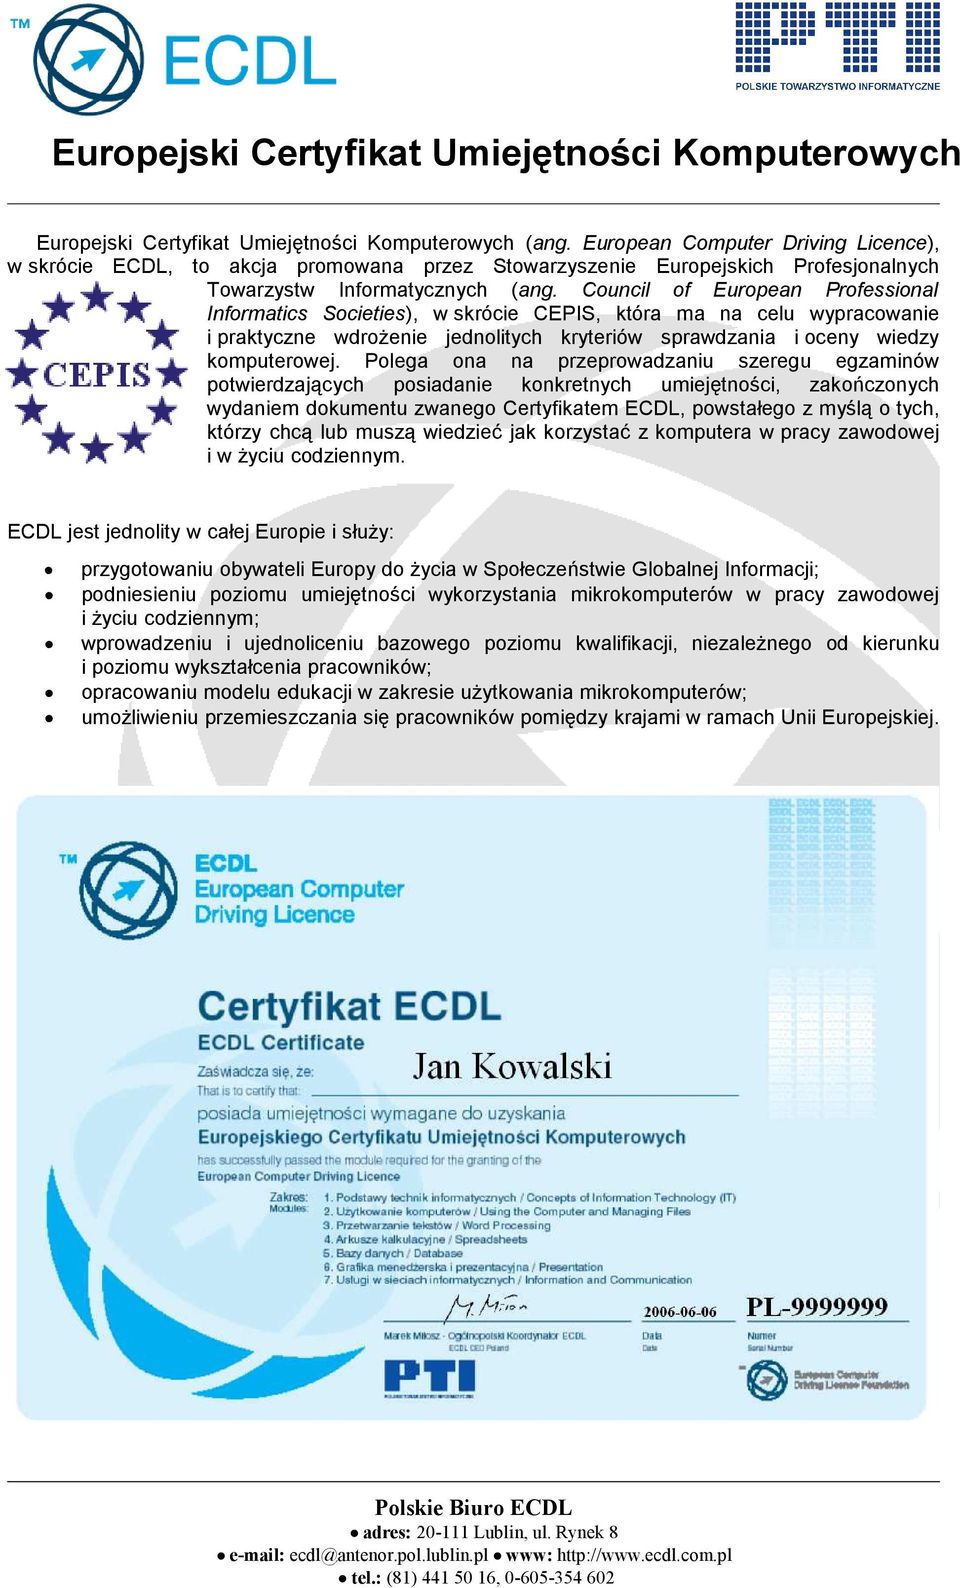 Council of European Professional Informatics Societies), w skrócie CEPIS, która ma na celu wypracowanie i praktyczne wdrożenie jednolitych kryteriów sprawdzania i oceny wiedzy komputerowej.